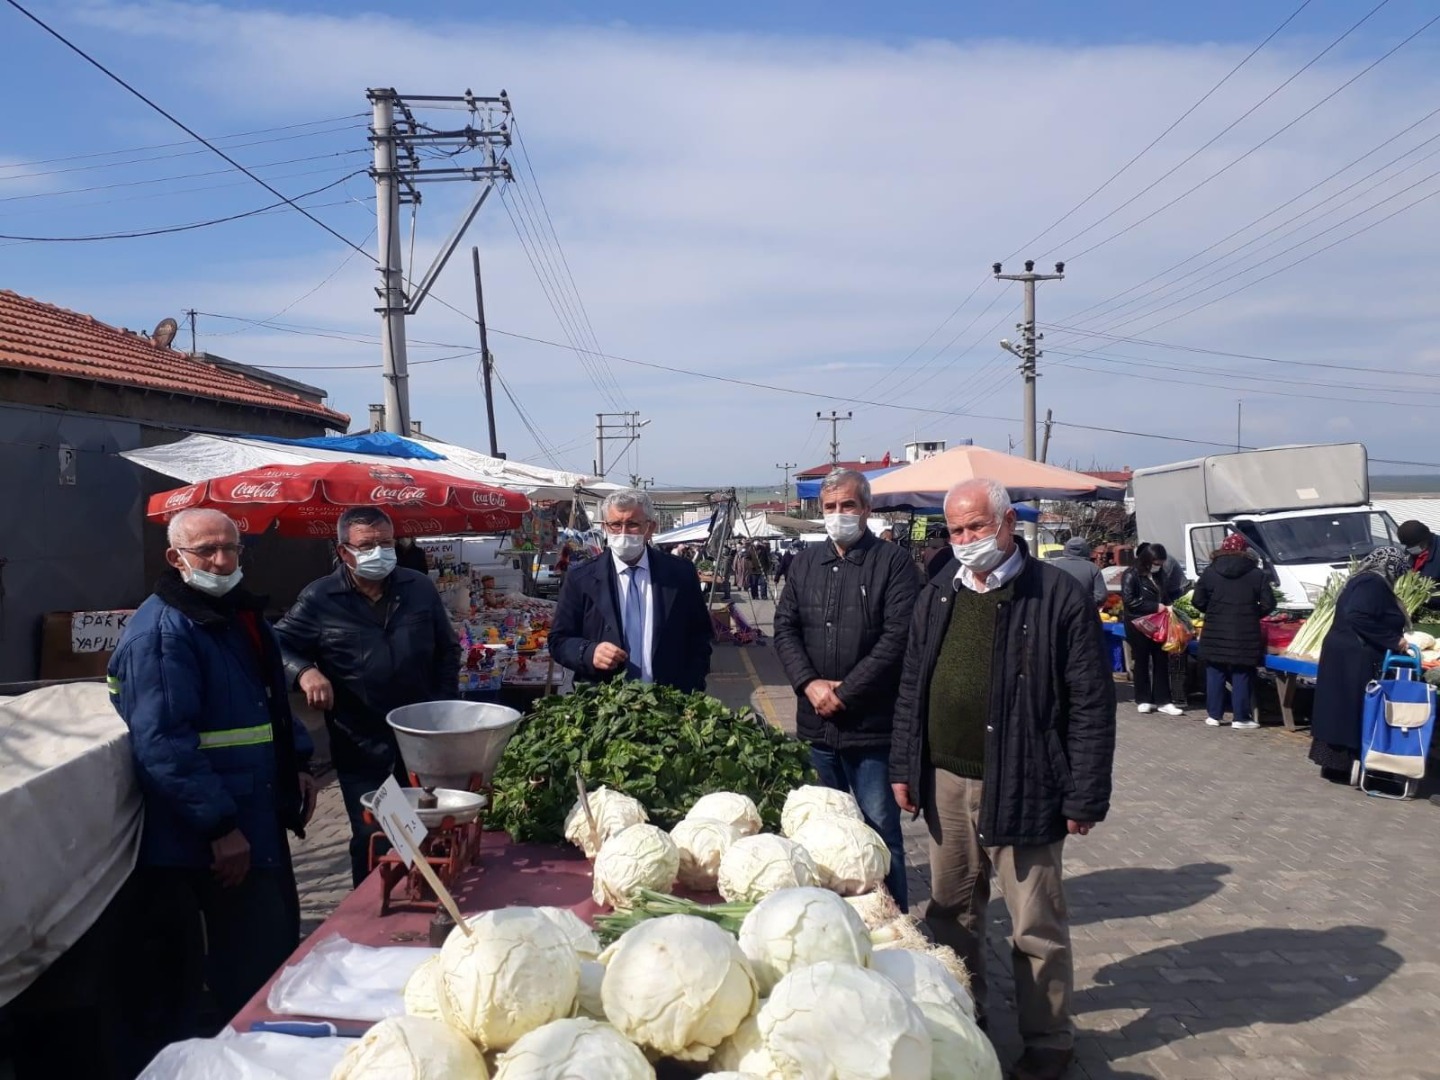 İYİ Partililer Ergene'de pazarda esnaf ile buluştu